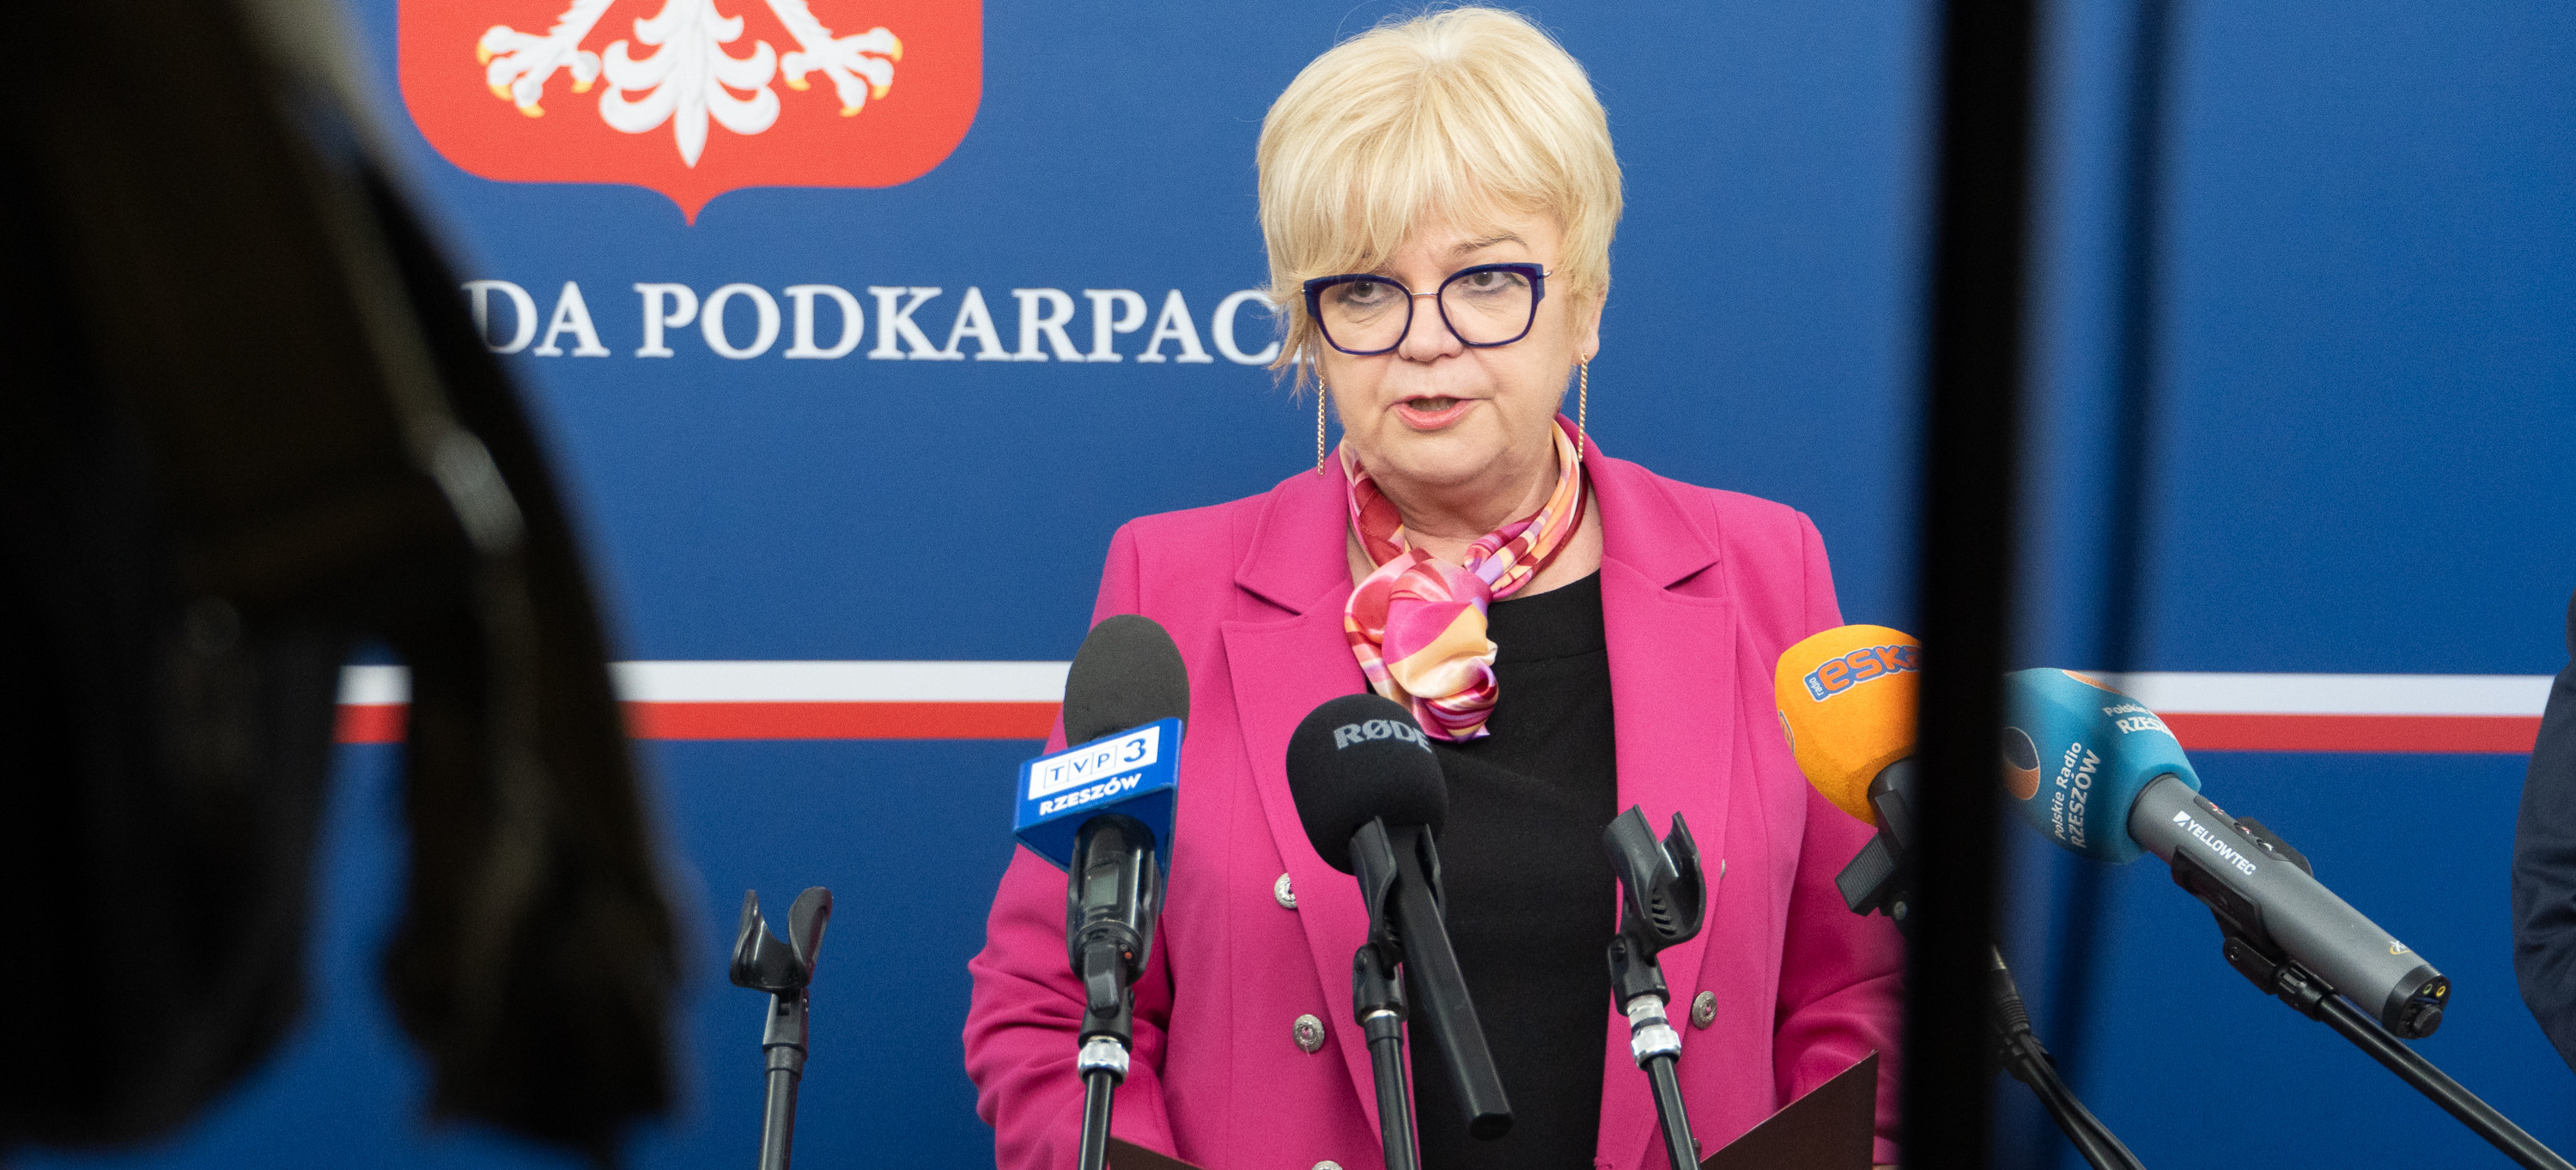 PODKARPACIE. Minister Klimczak przyznał 166 mln zł. na rozwój dróg w naszym województwie